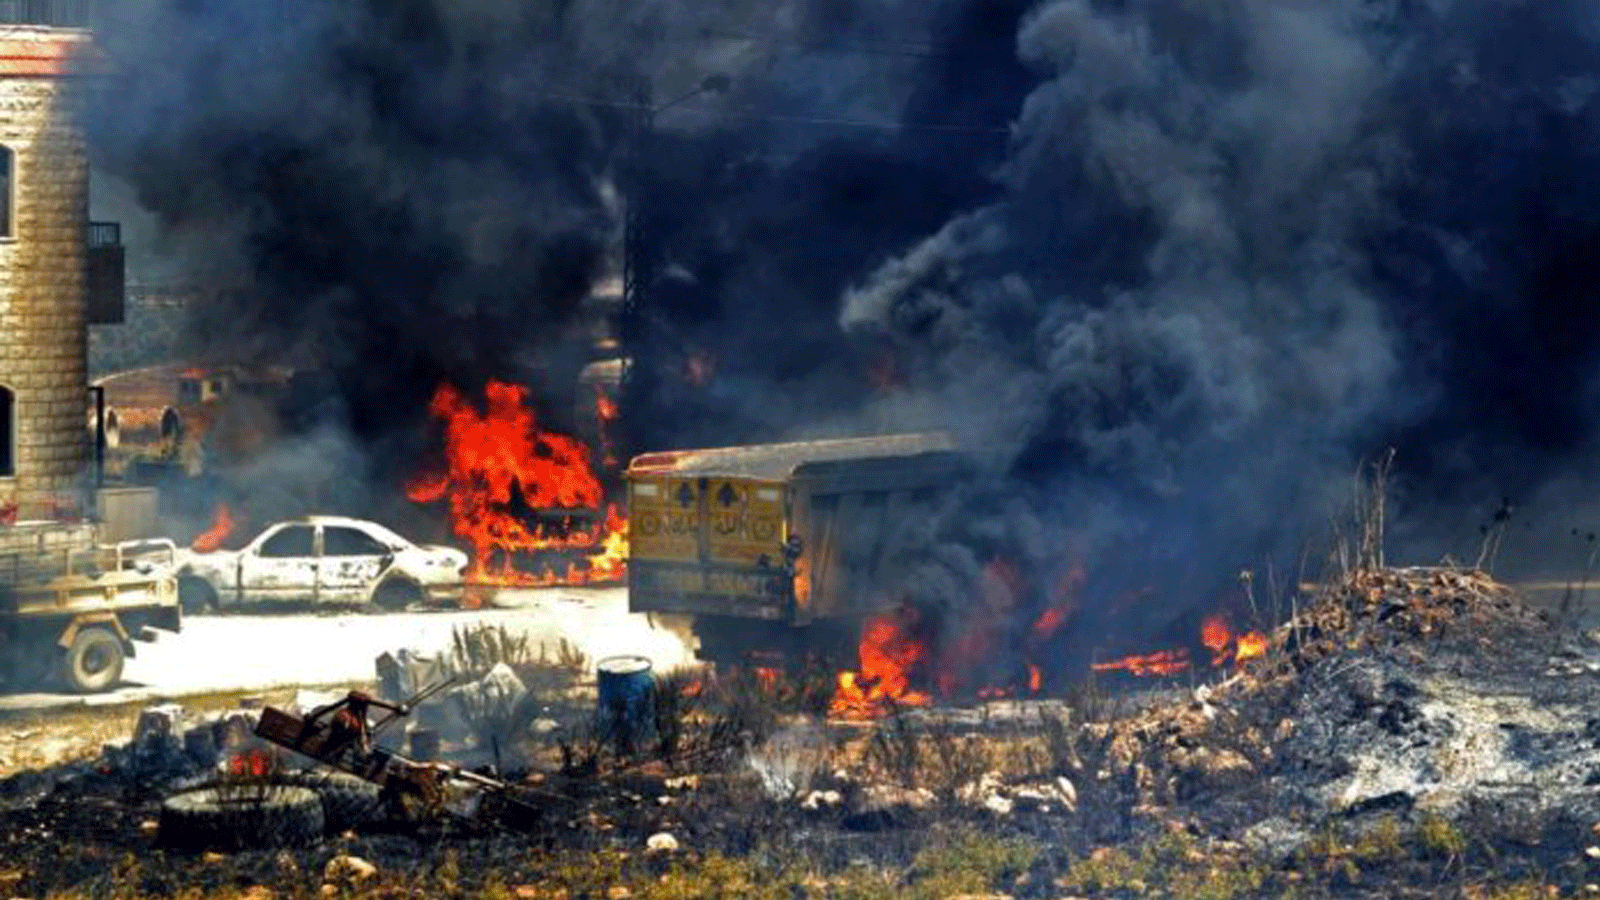 سيارات تحترق حيث تم وضع خزان الوقود المنفجر، في قرية التليل في منطقة عكار شمال لبنان في 15 آب / أغسطس 2021